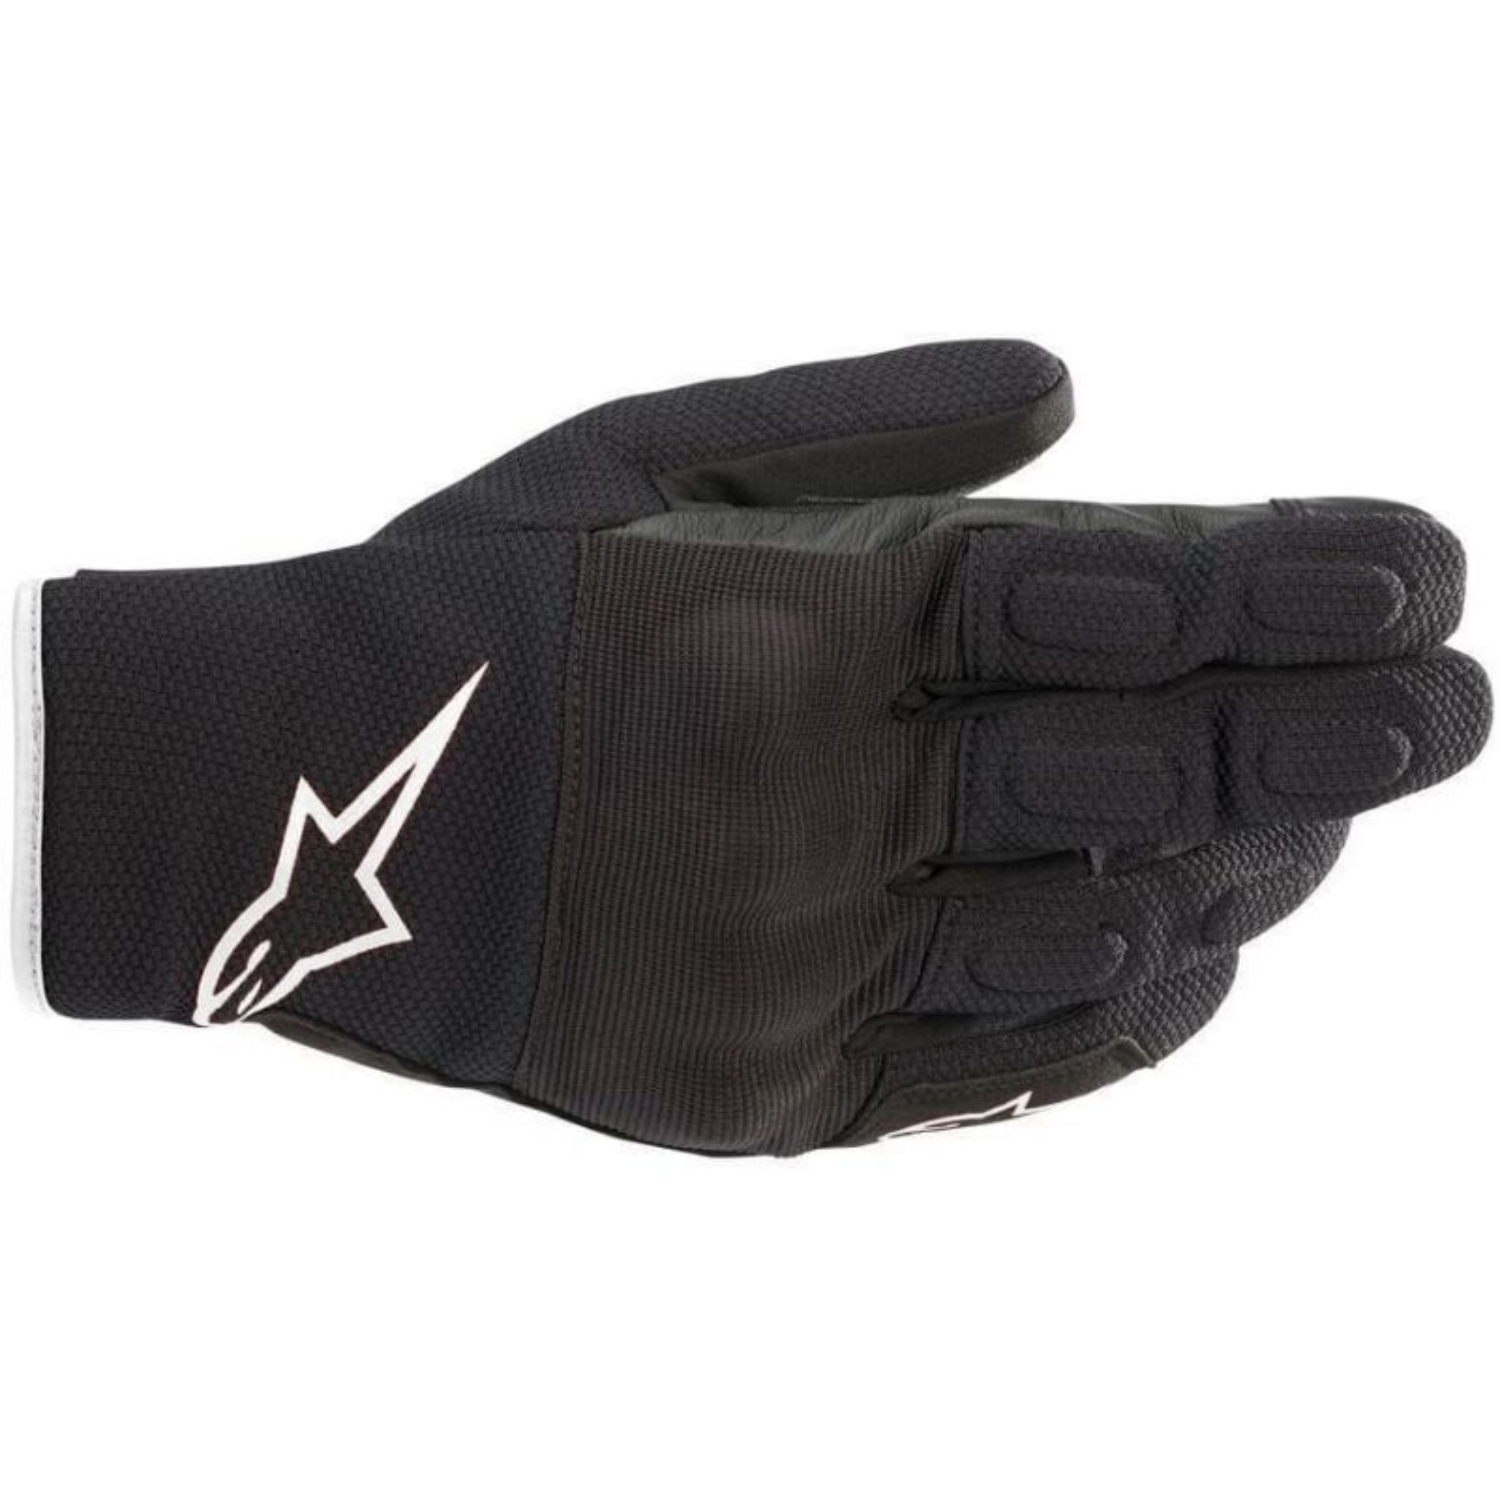 Image of Alpinestars S Max Drystar Gloves Black White Größe M